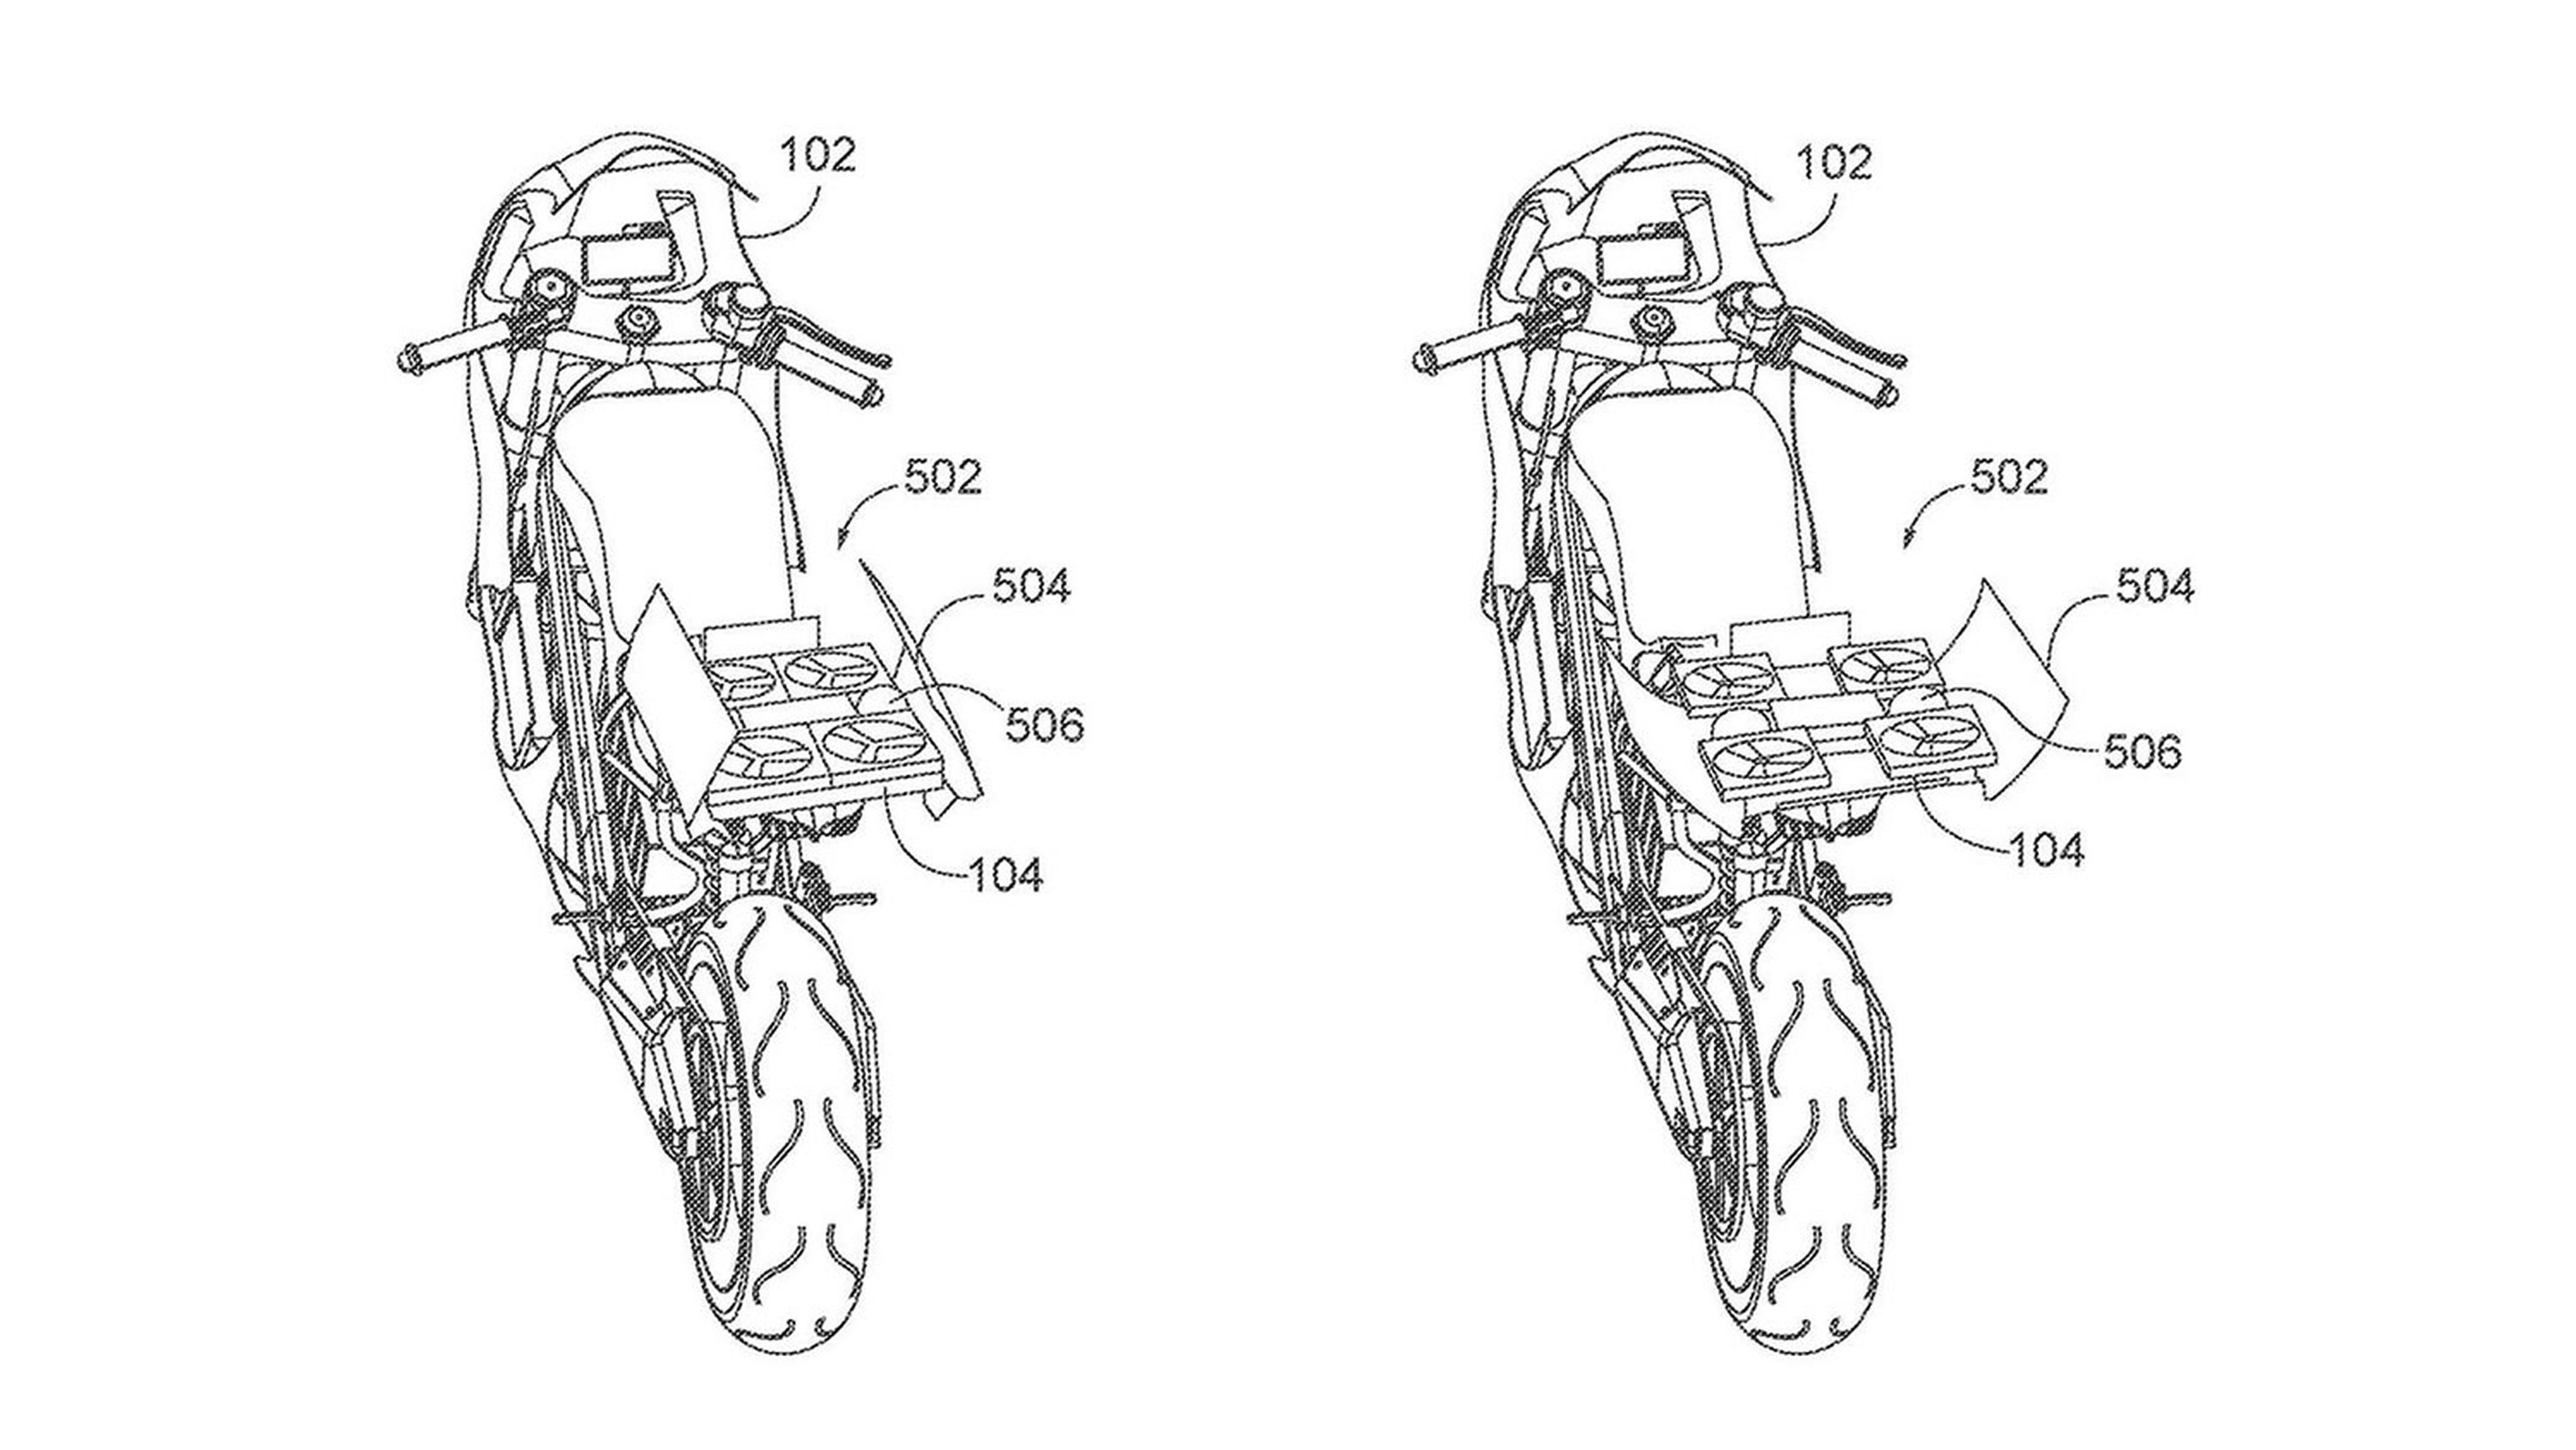 Patente Honda motocicleta eléctrica con dron